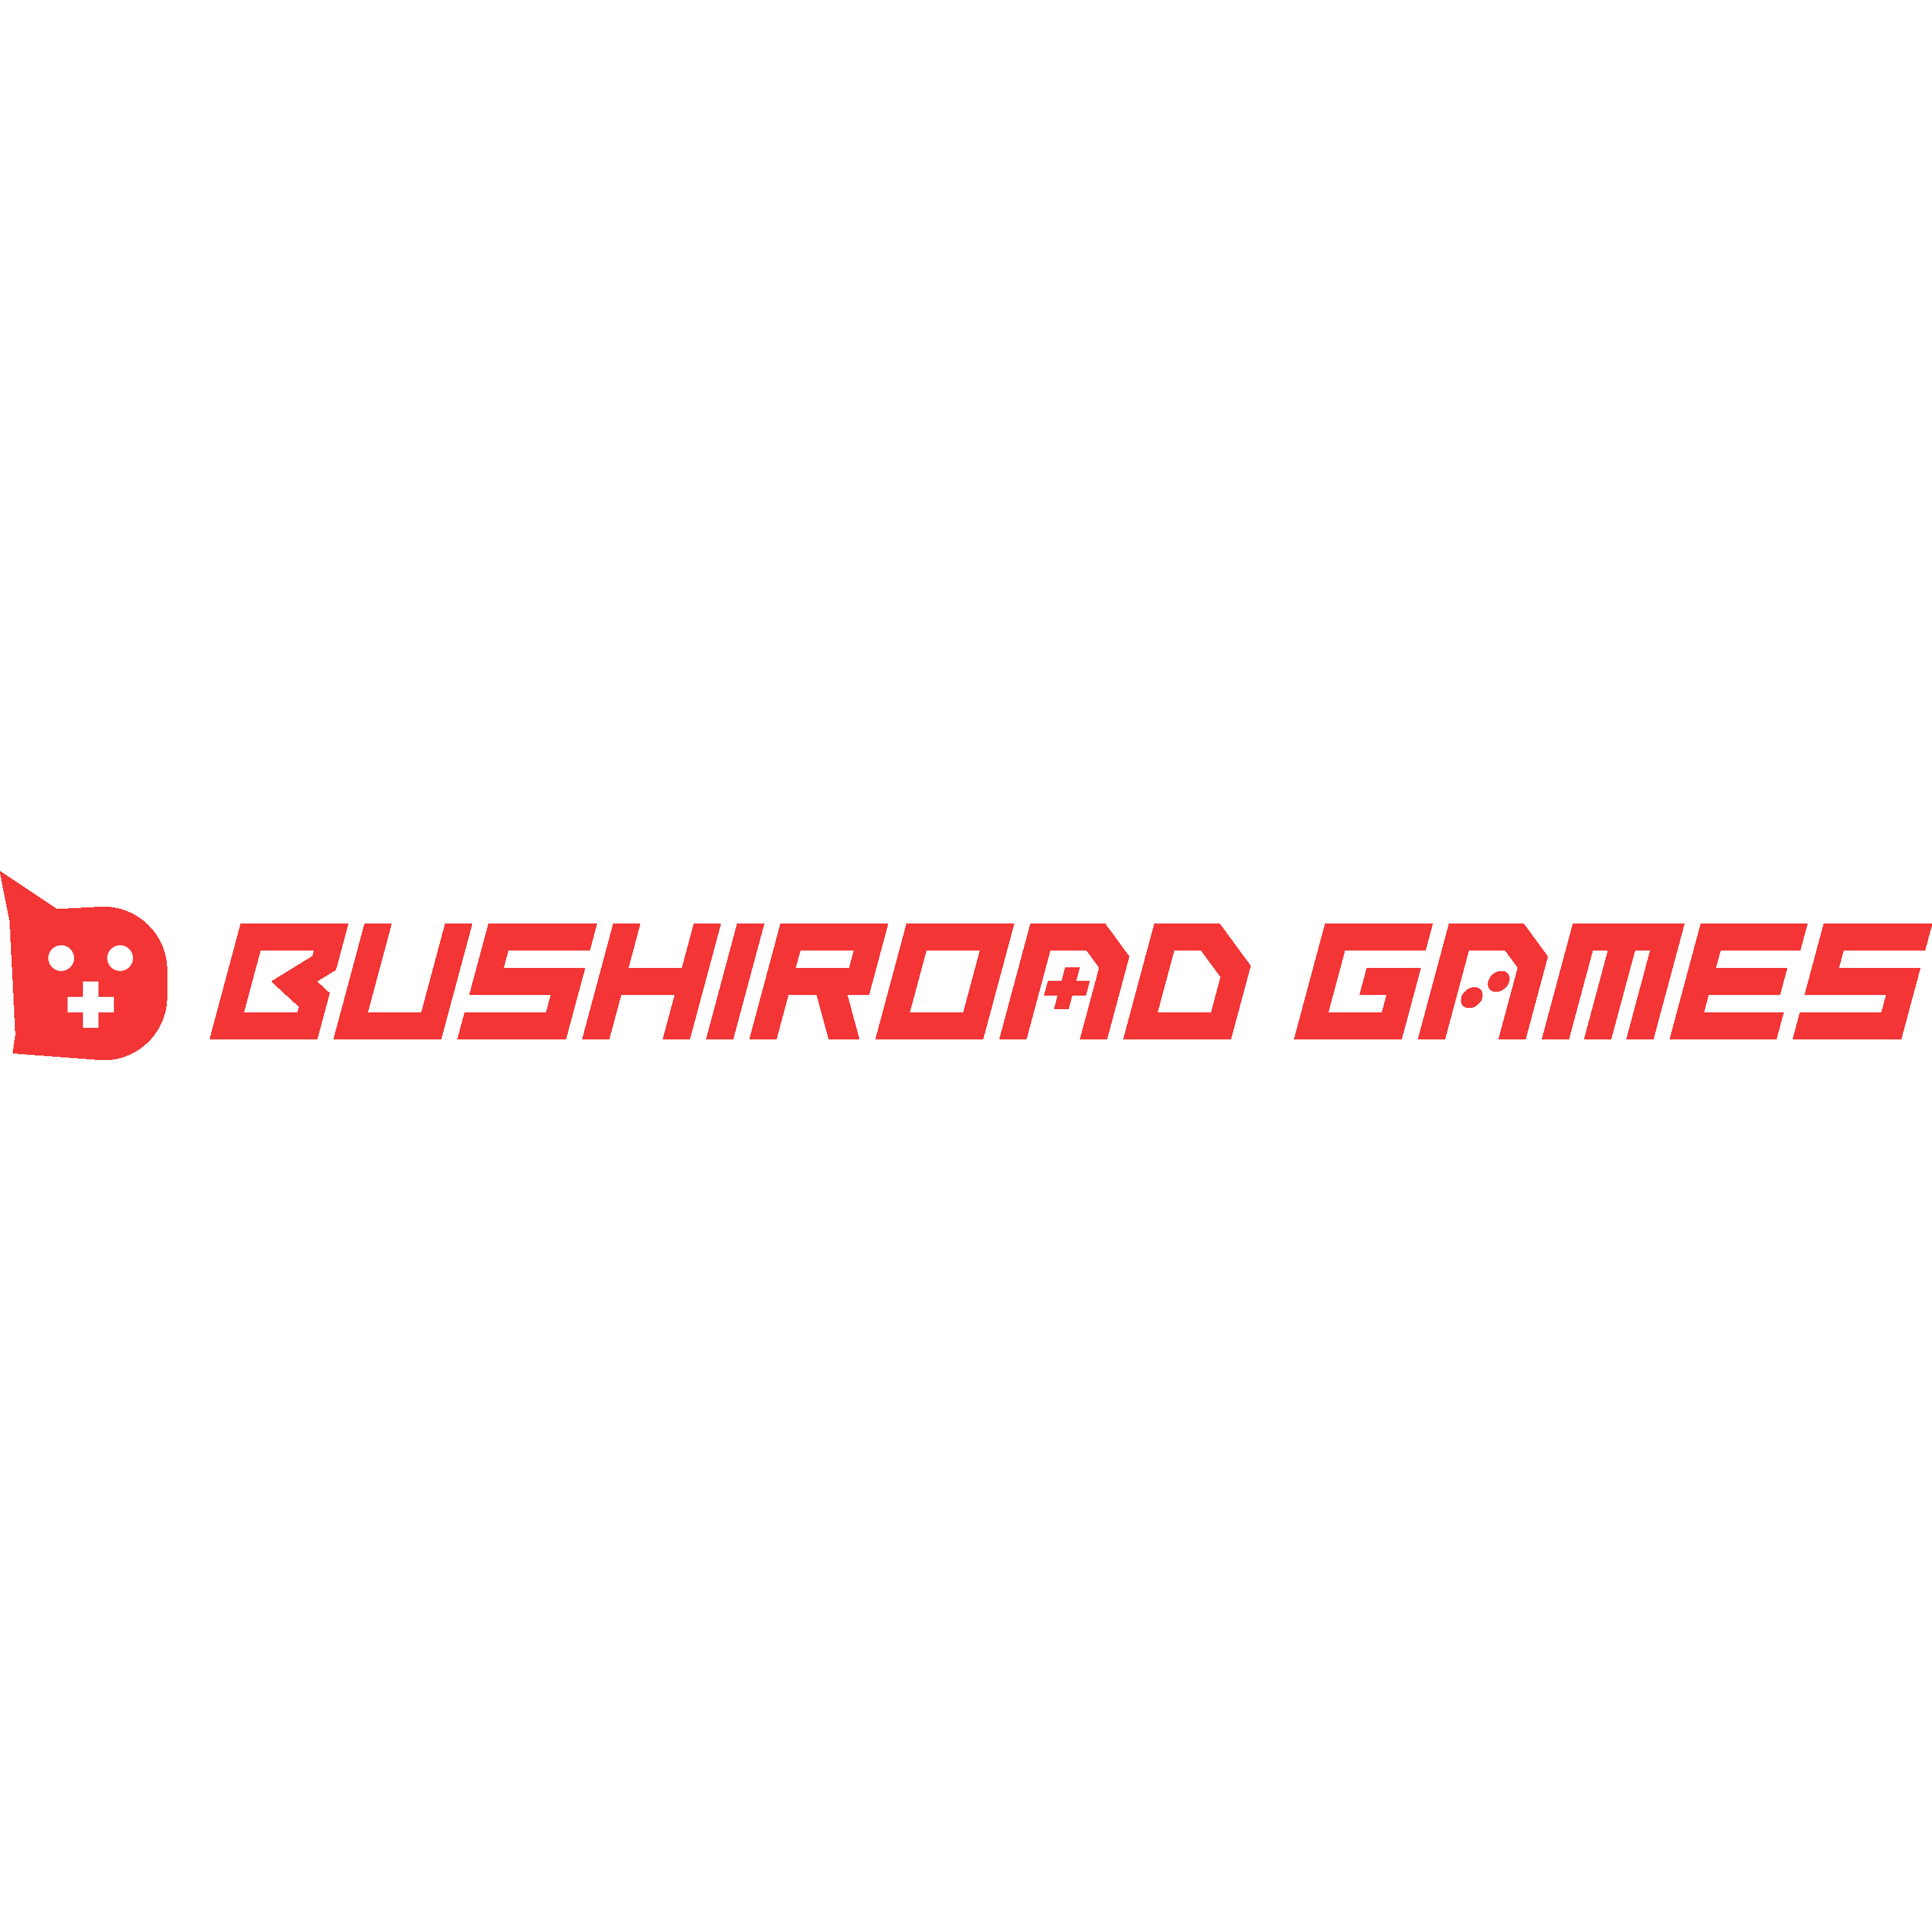 Bushiroad Games Logo  Transparent Clipart